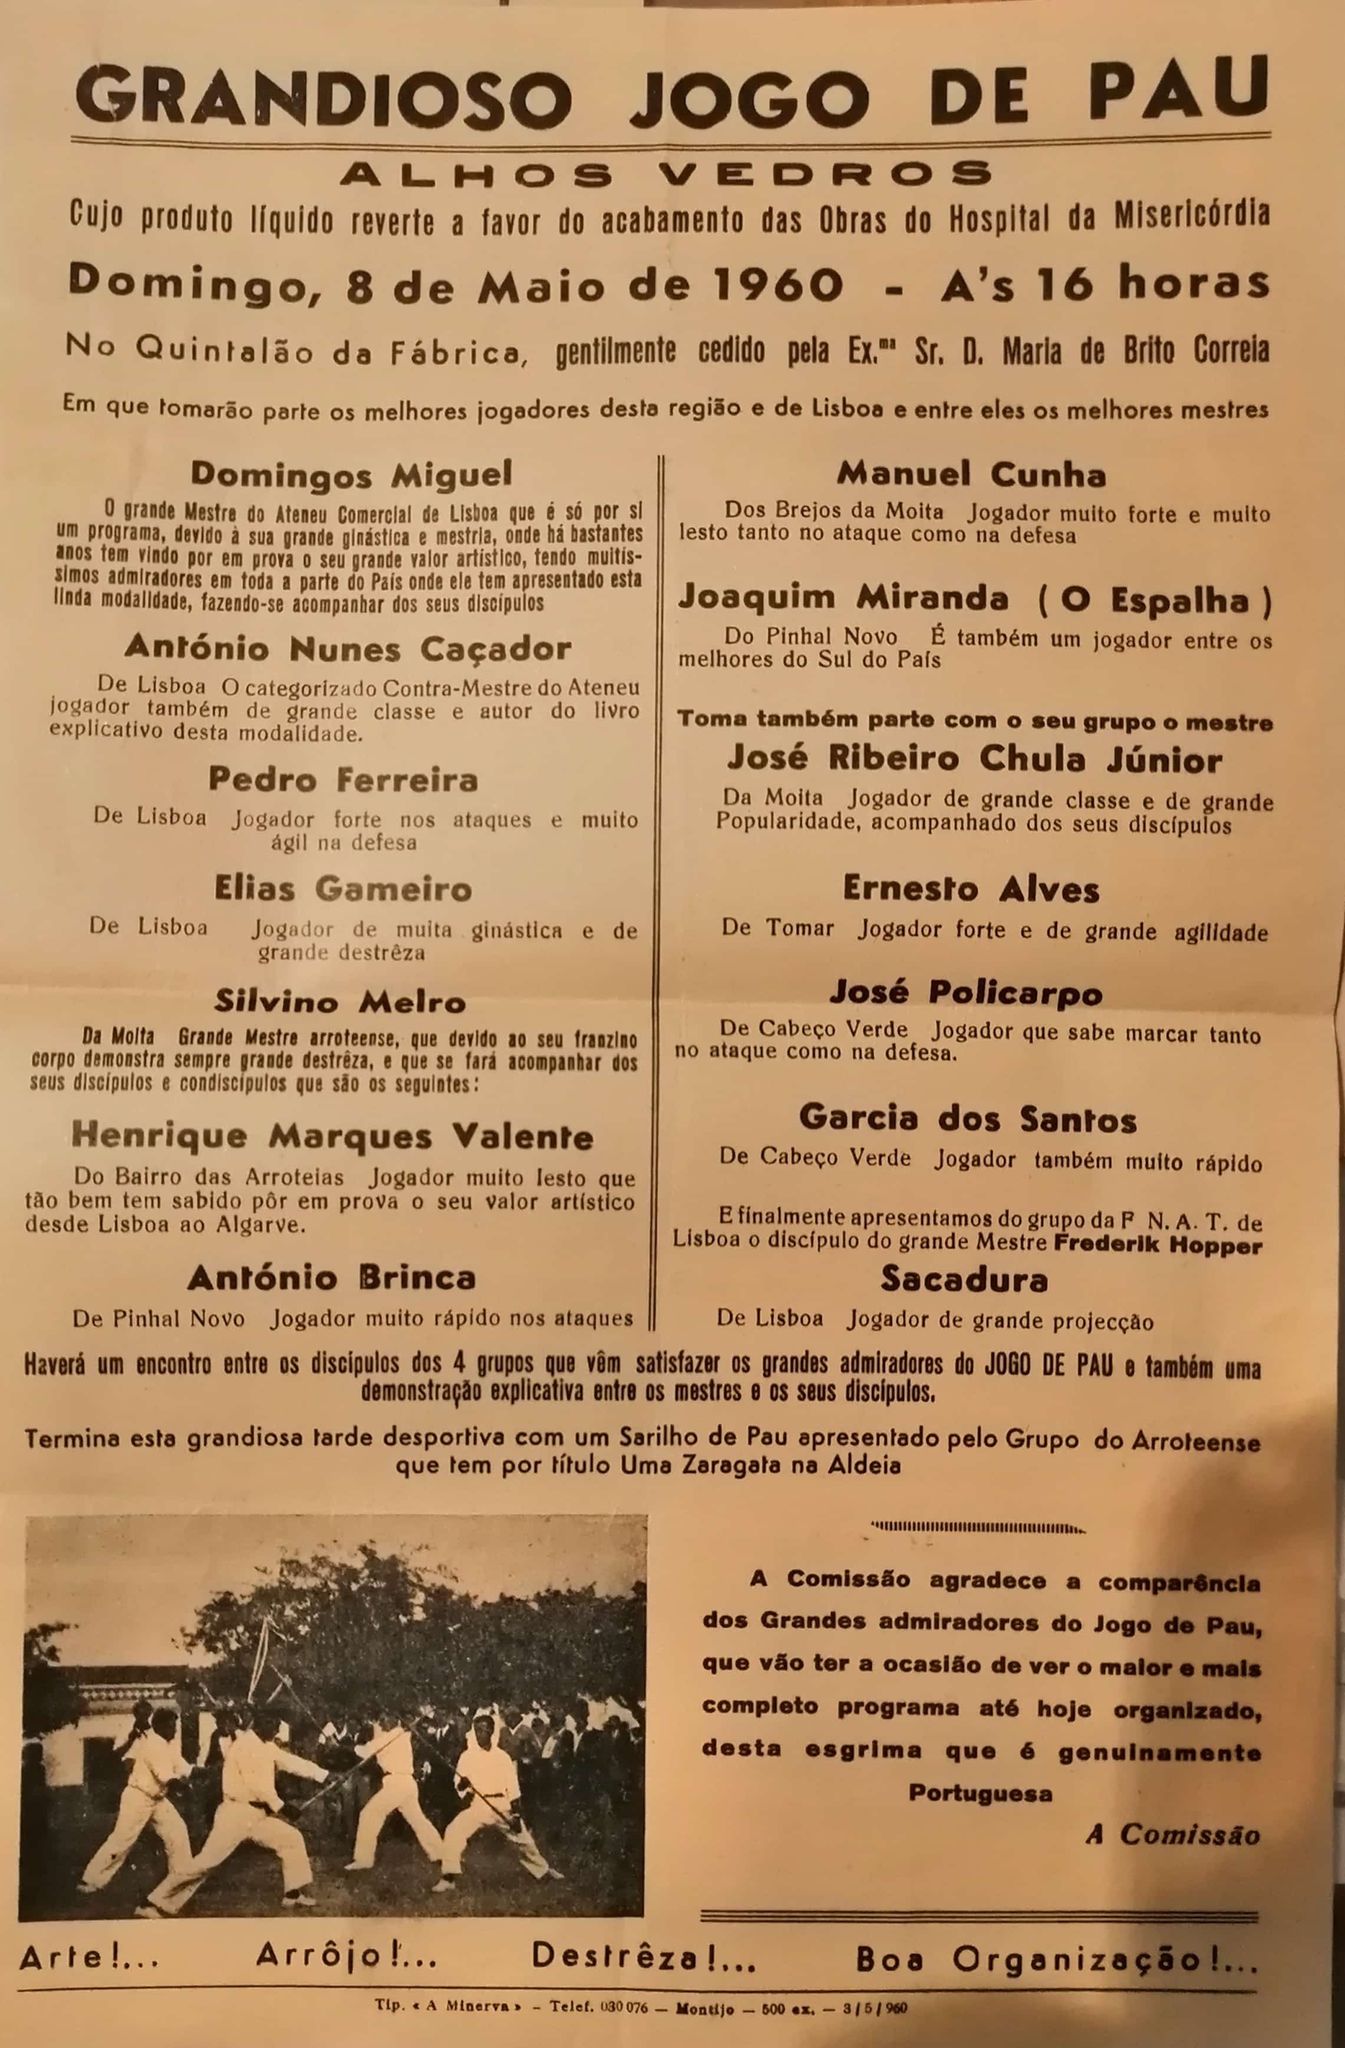 Grandioso Jogo de Pau em Alhos Vedros 1960.jpg